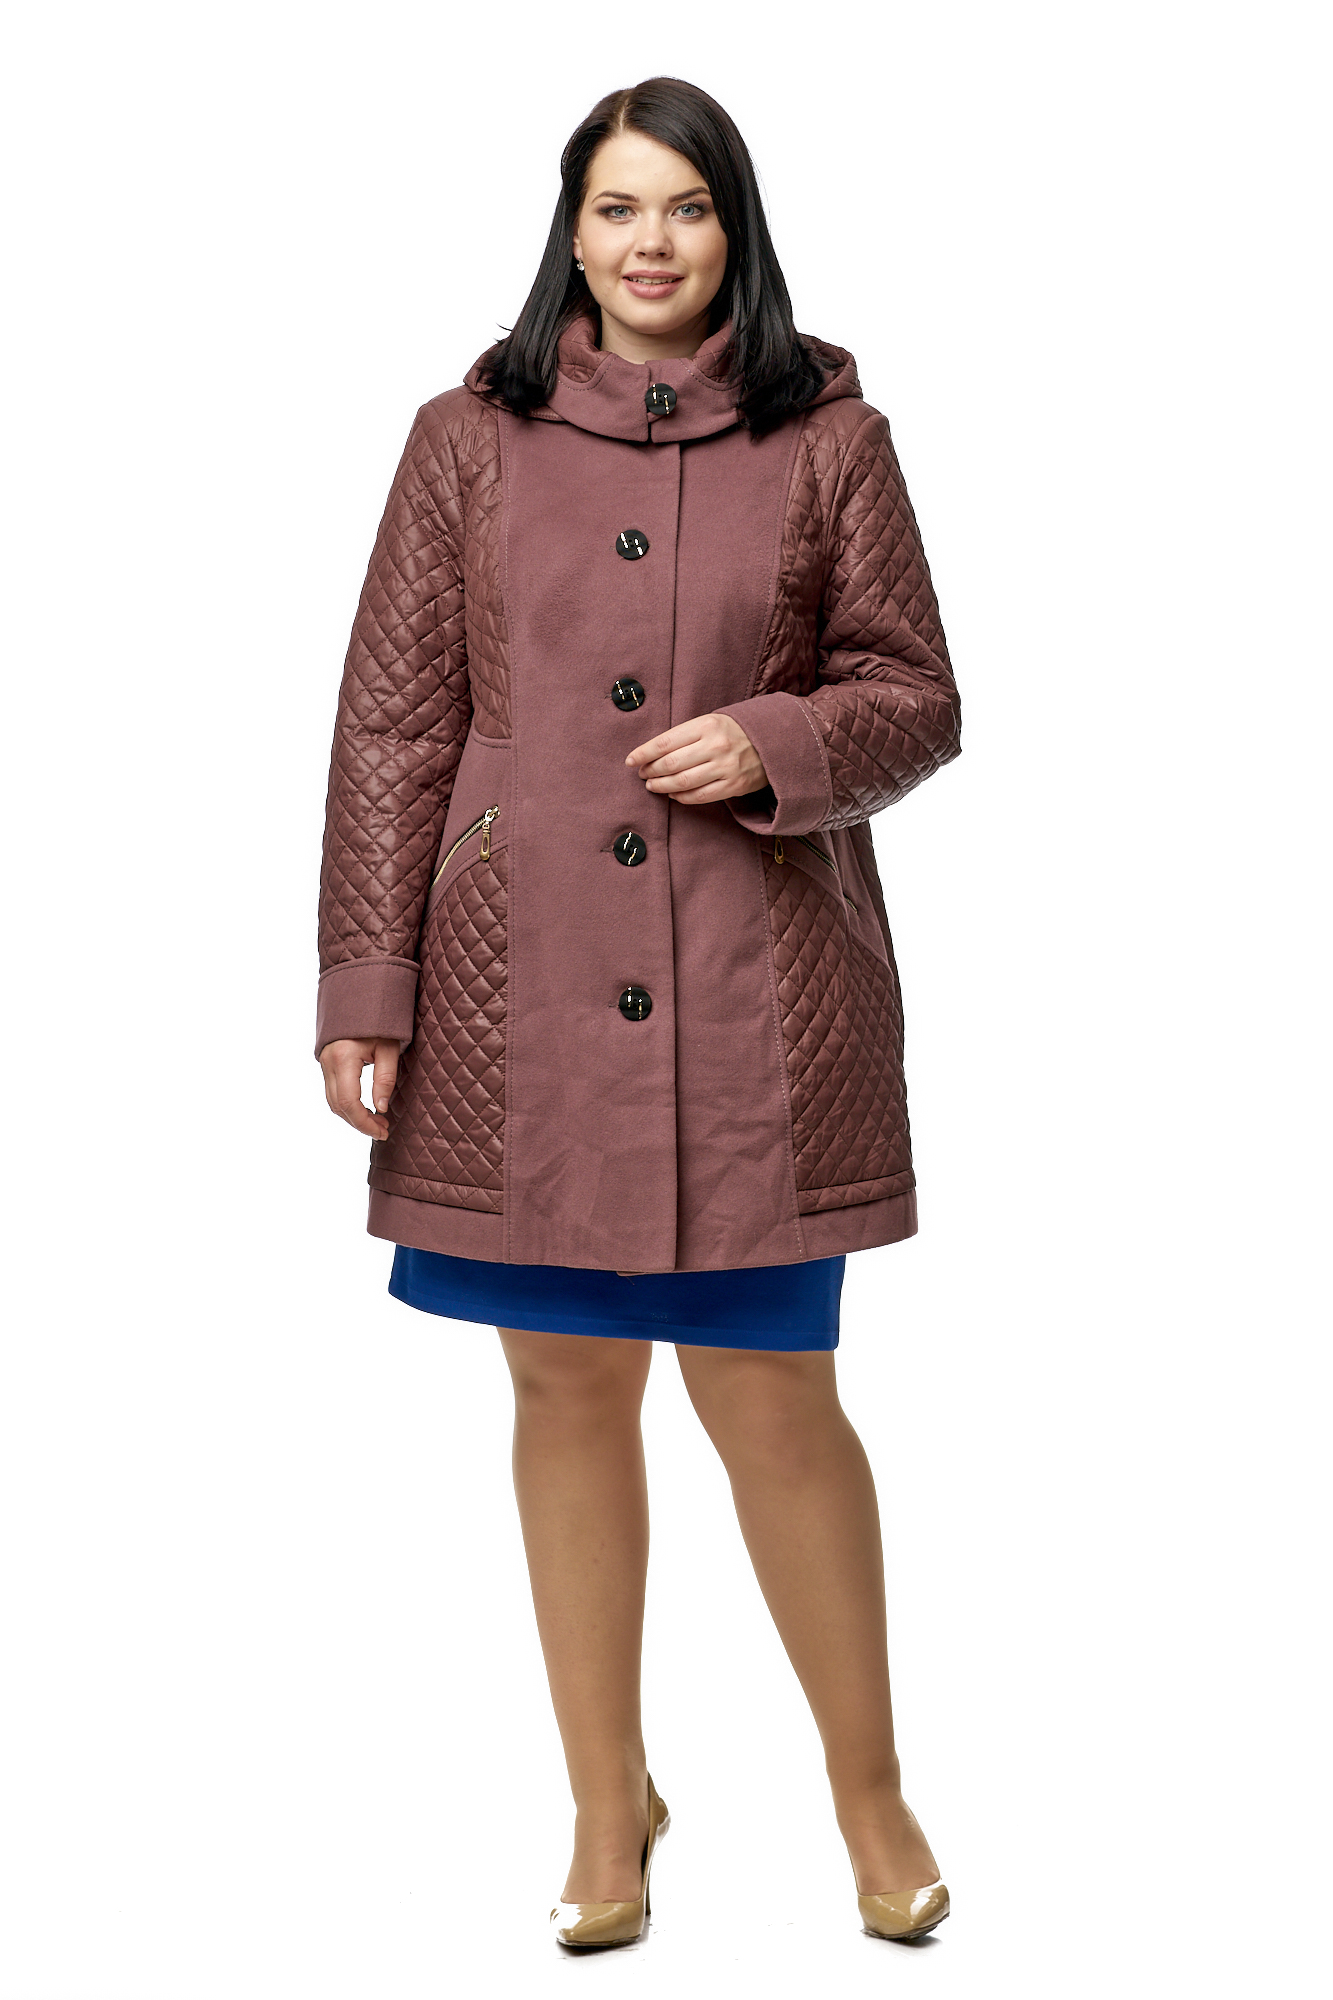 Куртка женская из текстиля с капюшоном